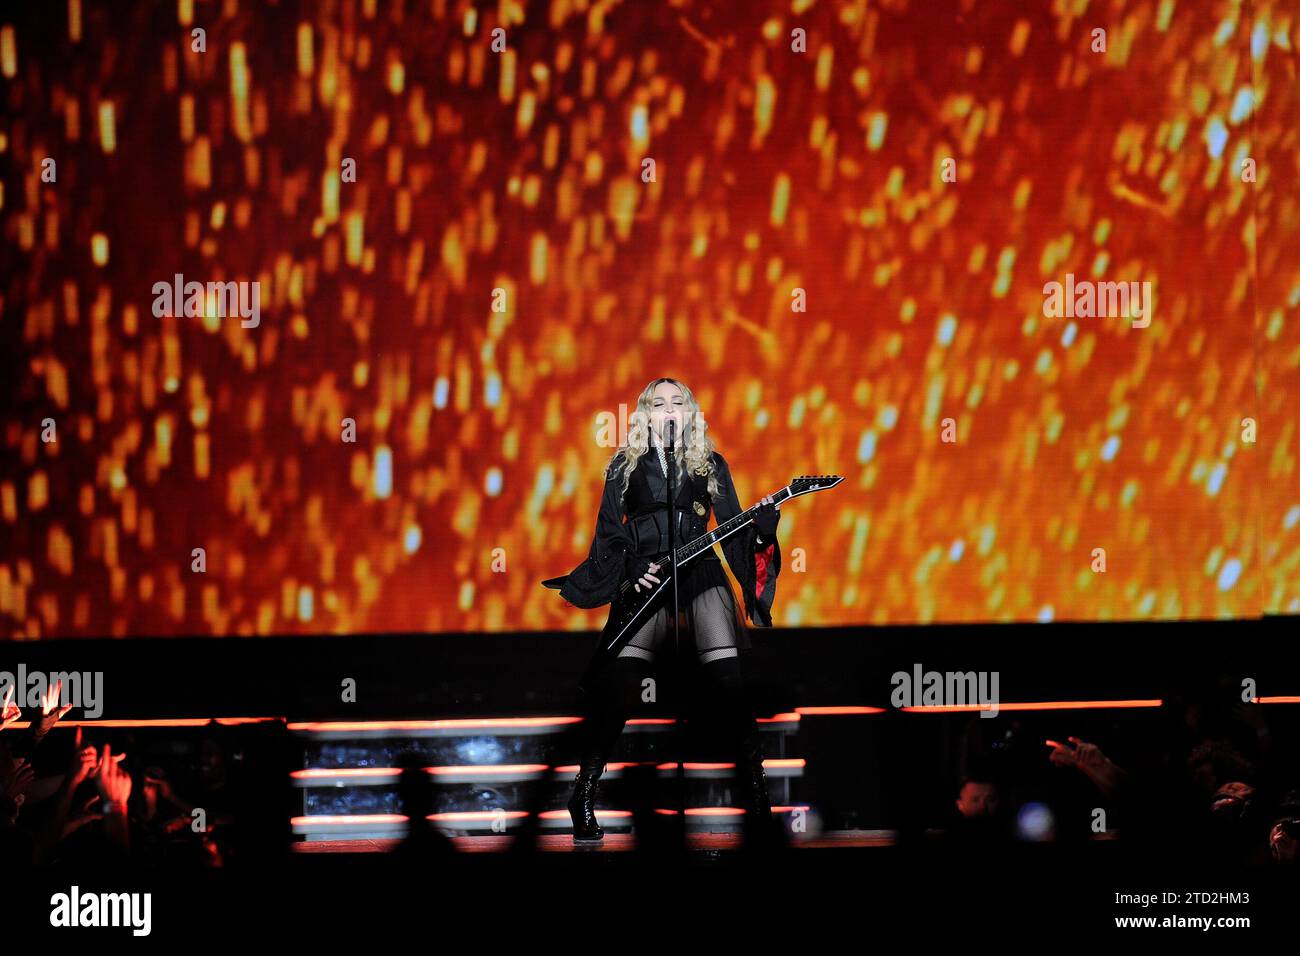 Barcelona, 24.11.2015. Madonna Konzert im Palau sant Jordi. Foto: Inés Baucells Archdc. Quelle: Album / Archivo ABC / Inés Baucells Stockfoto